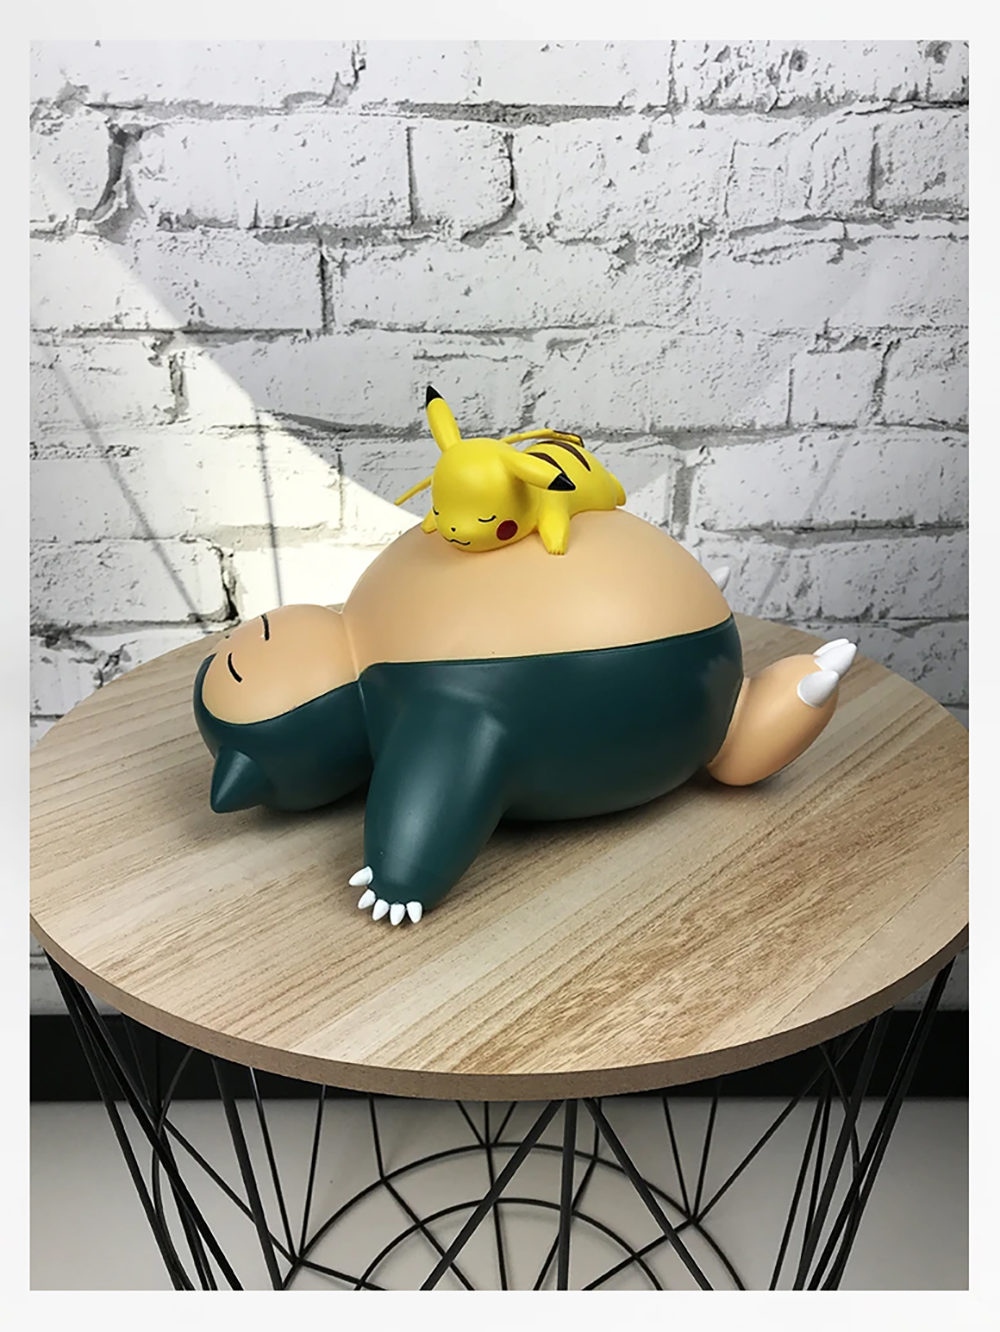 Teknofun Lampe Led Pokémon - Pikachu Assis